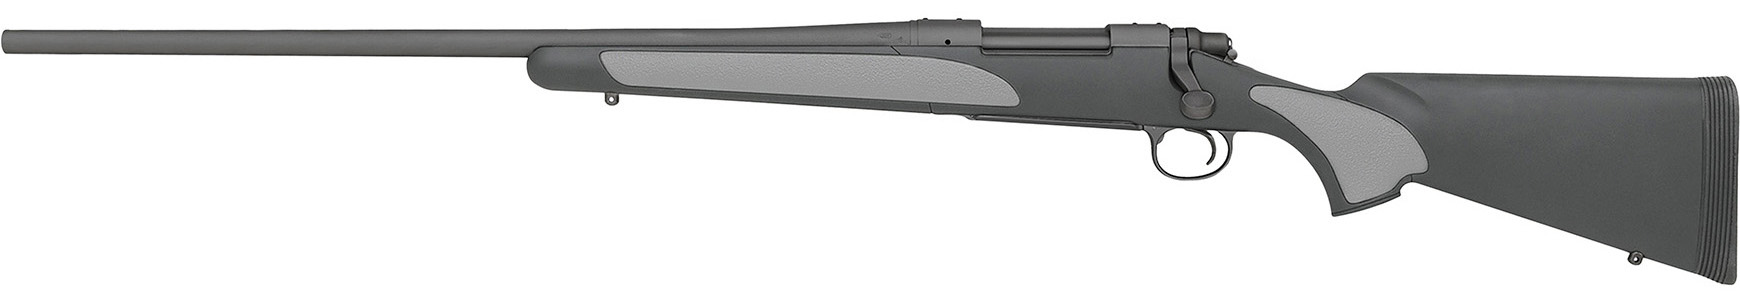 Model 700 SPS LH (Left Hand)